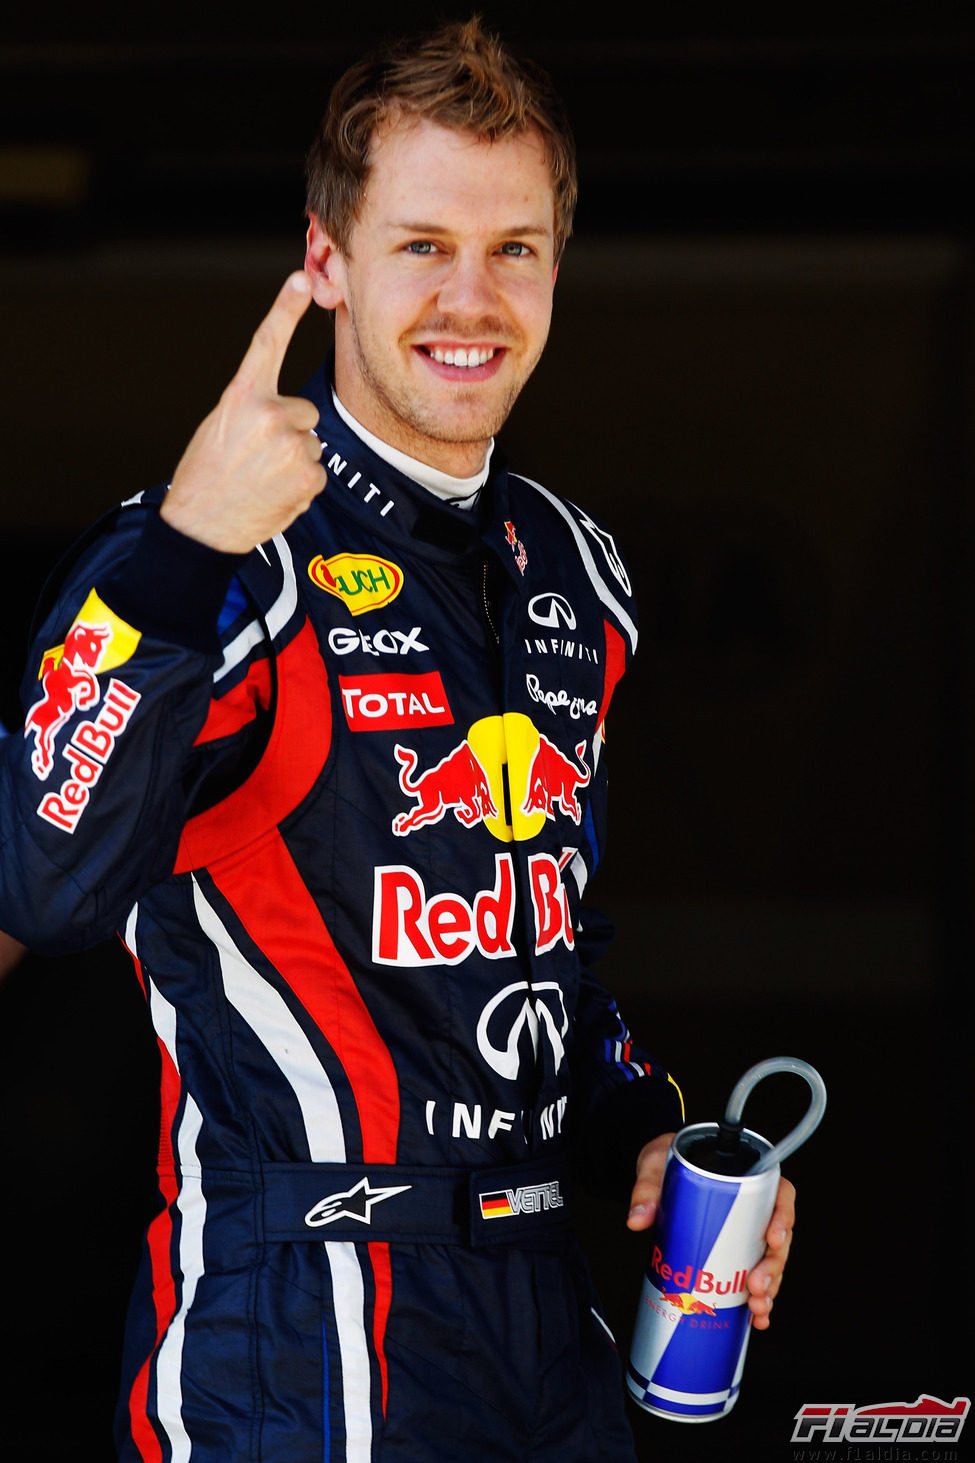 Cuarta 'pole' de 2011 para Vettel en el GP de Turquía 2011